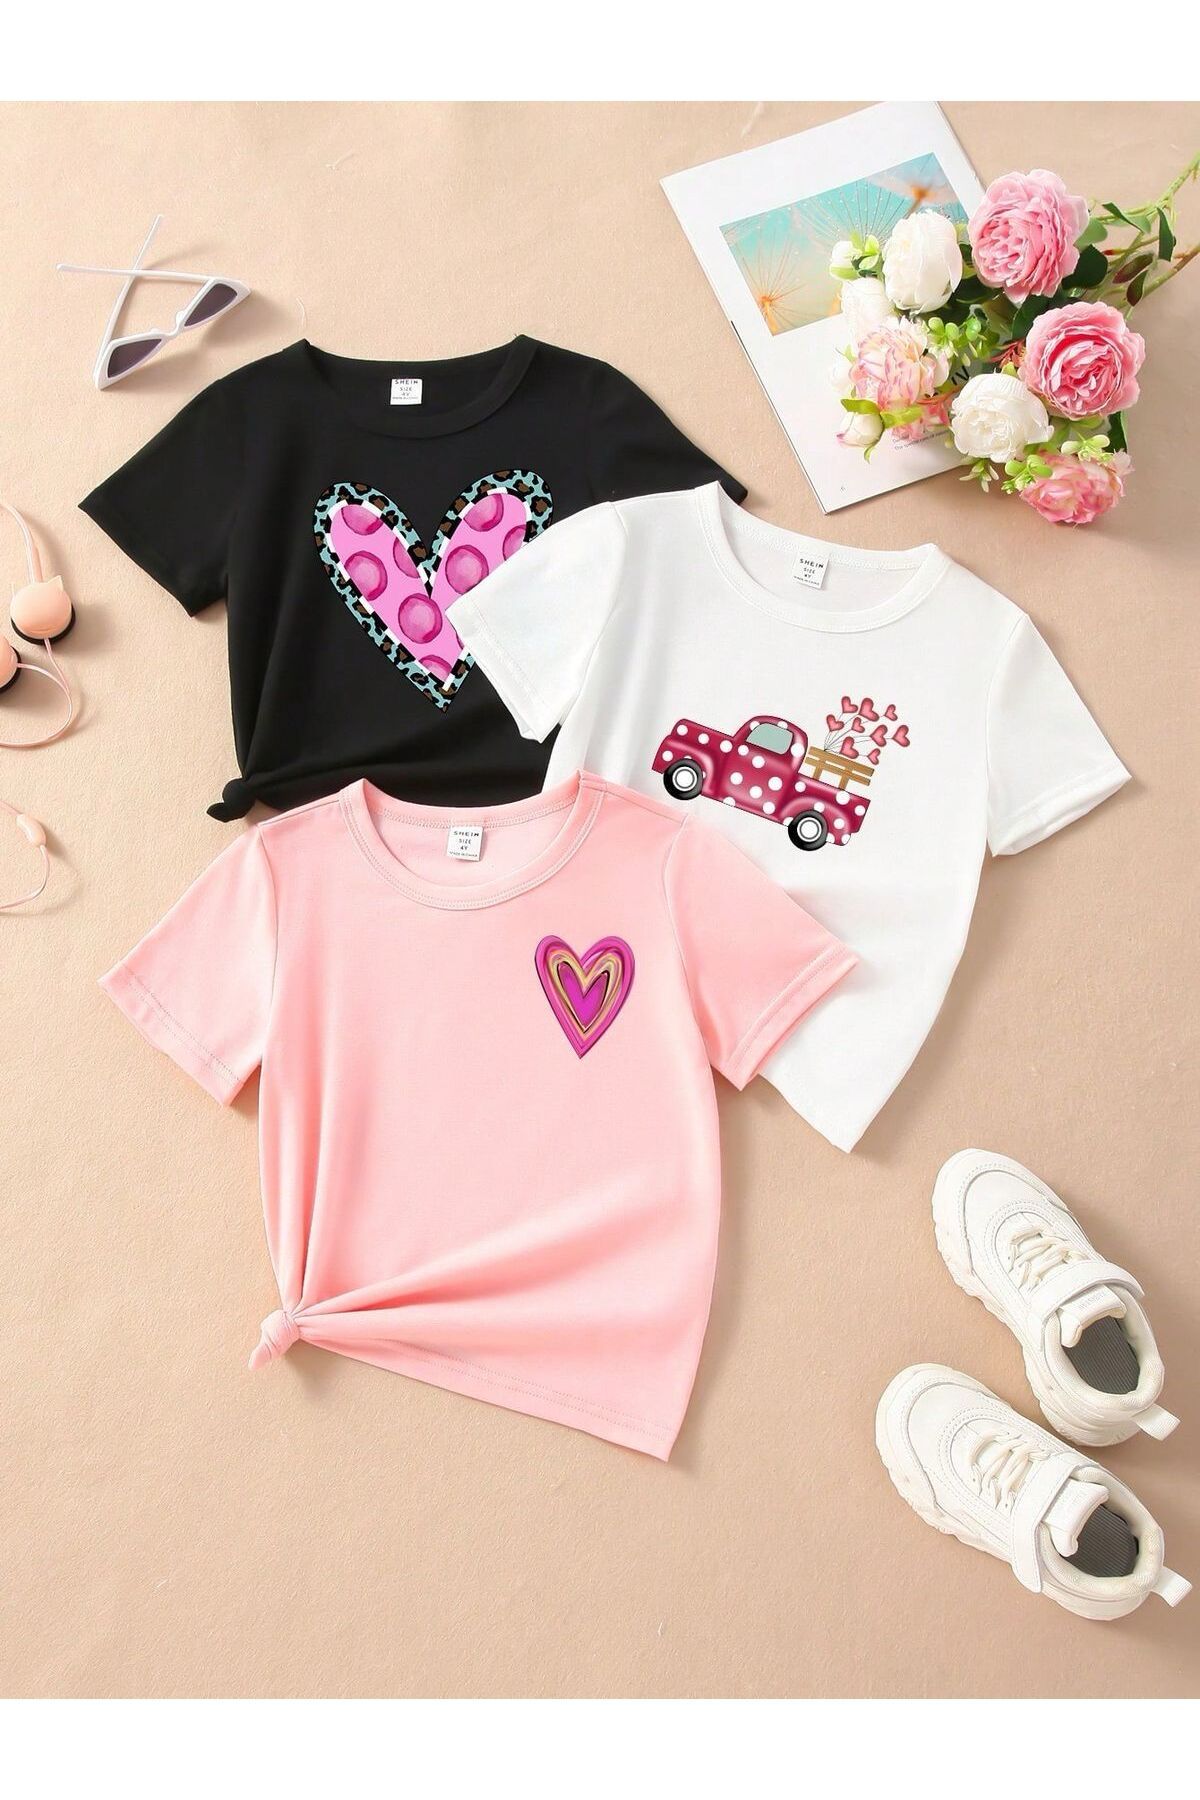 MORNİNG KİDS KIz Çocuk Kalpler ve Kalpli Araba Baskılı Siyah-Beyaz-Pembe 3'lü Paket Tişört